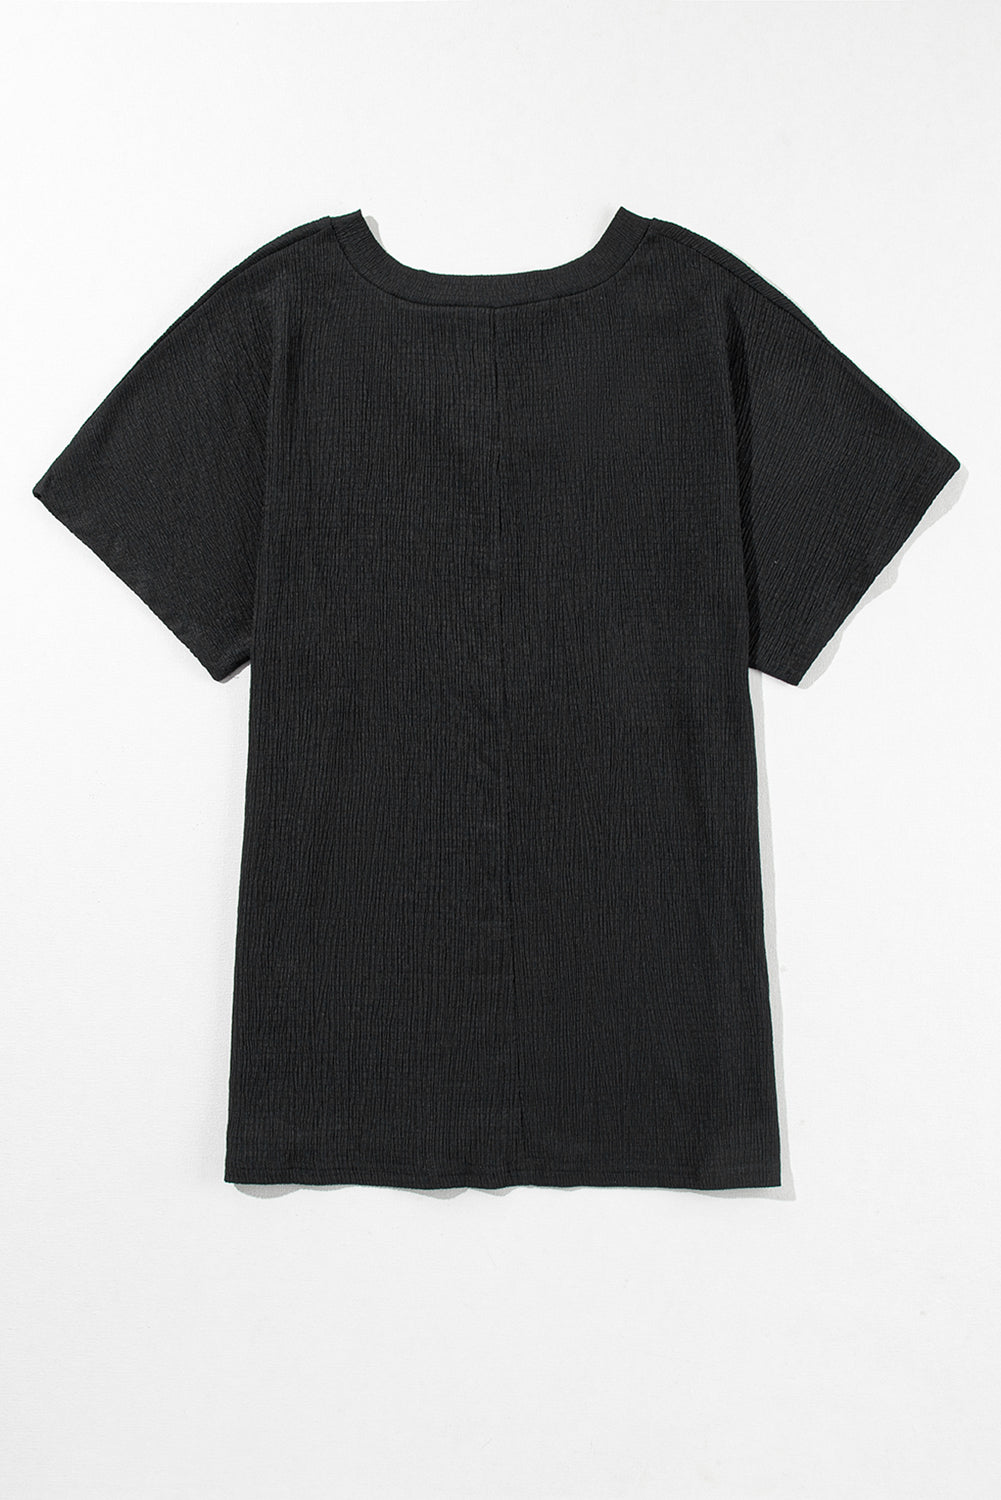 Black Crinkled Daisy Embroidered V Neck T Shirt